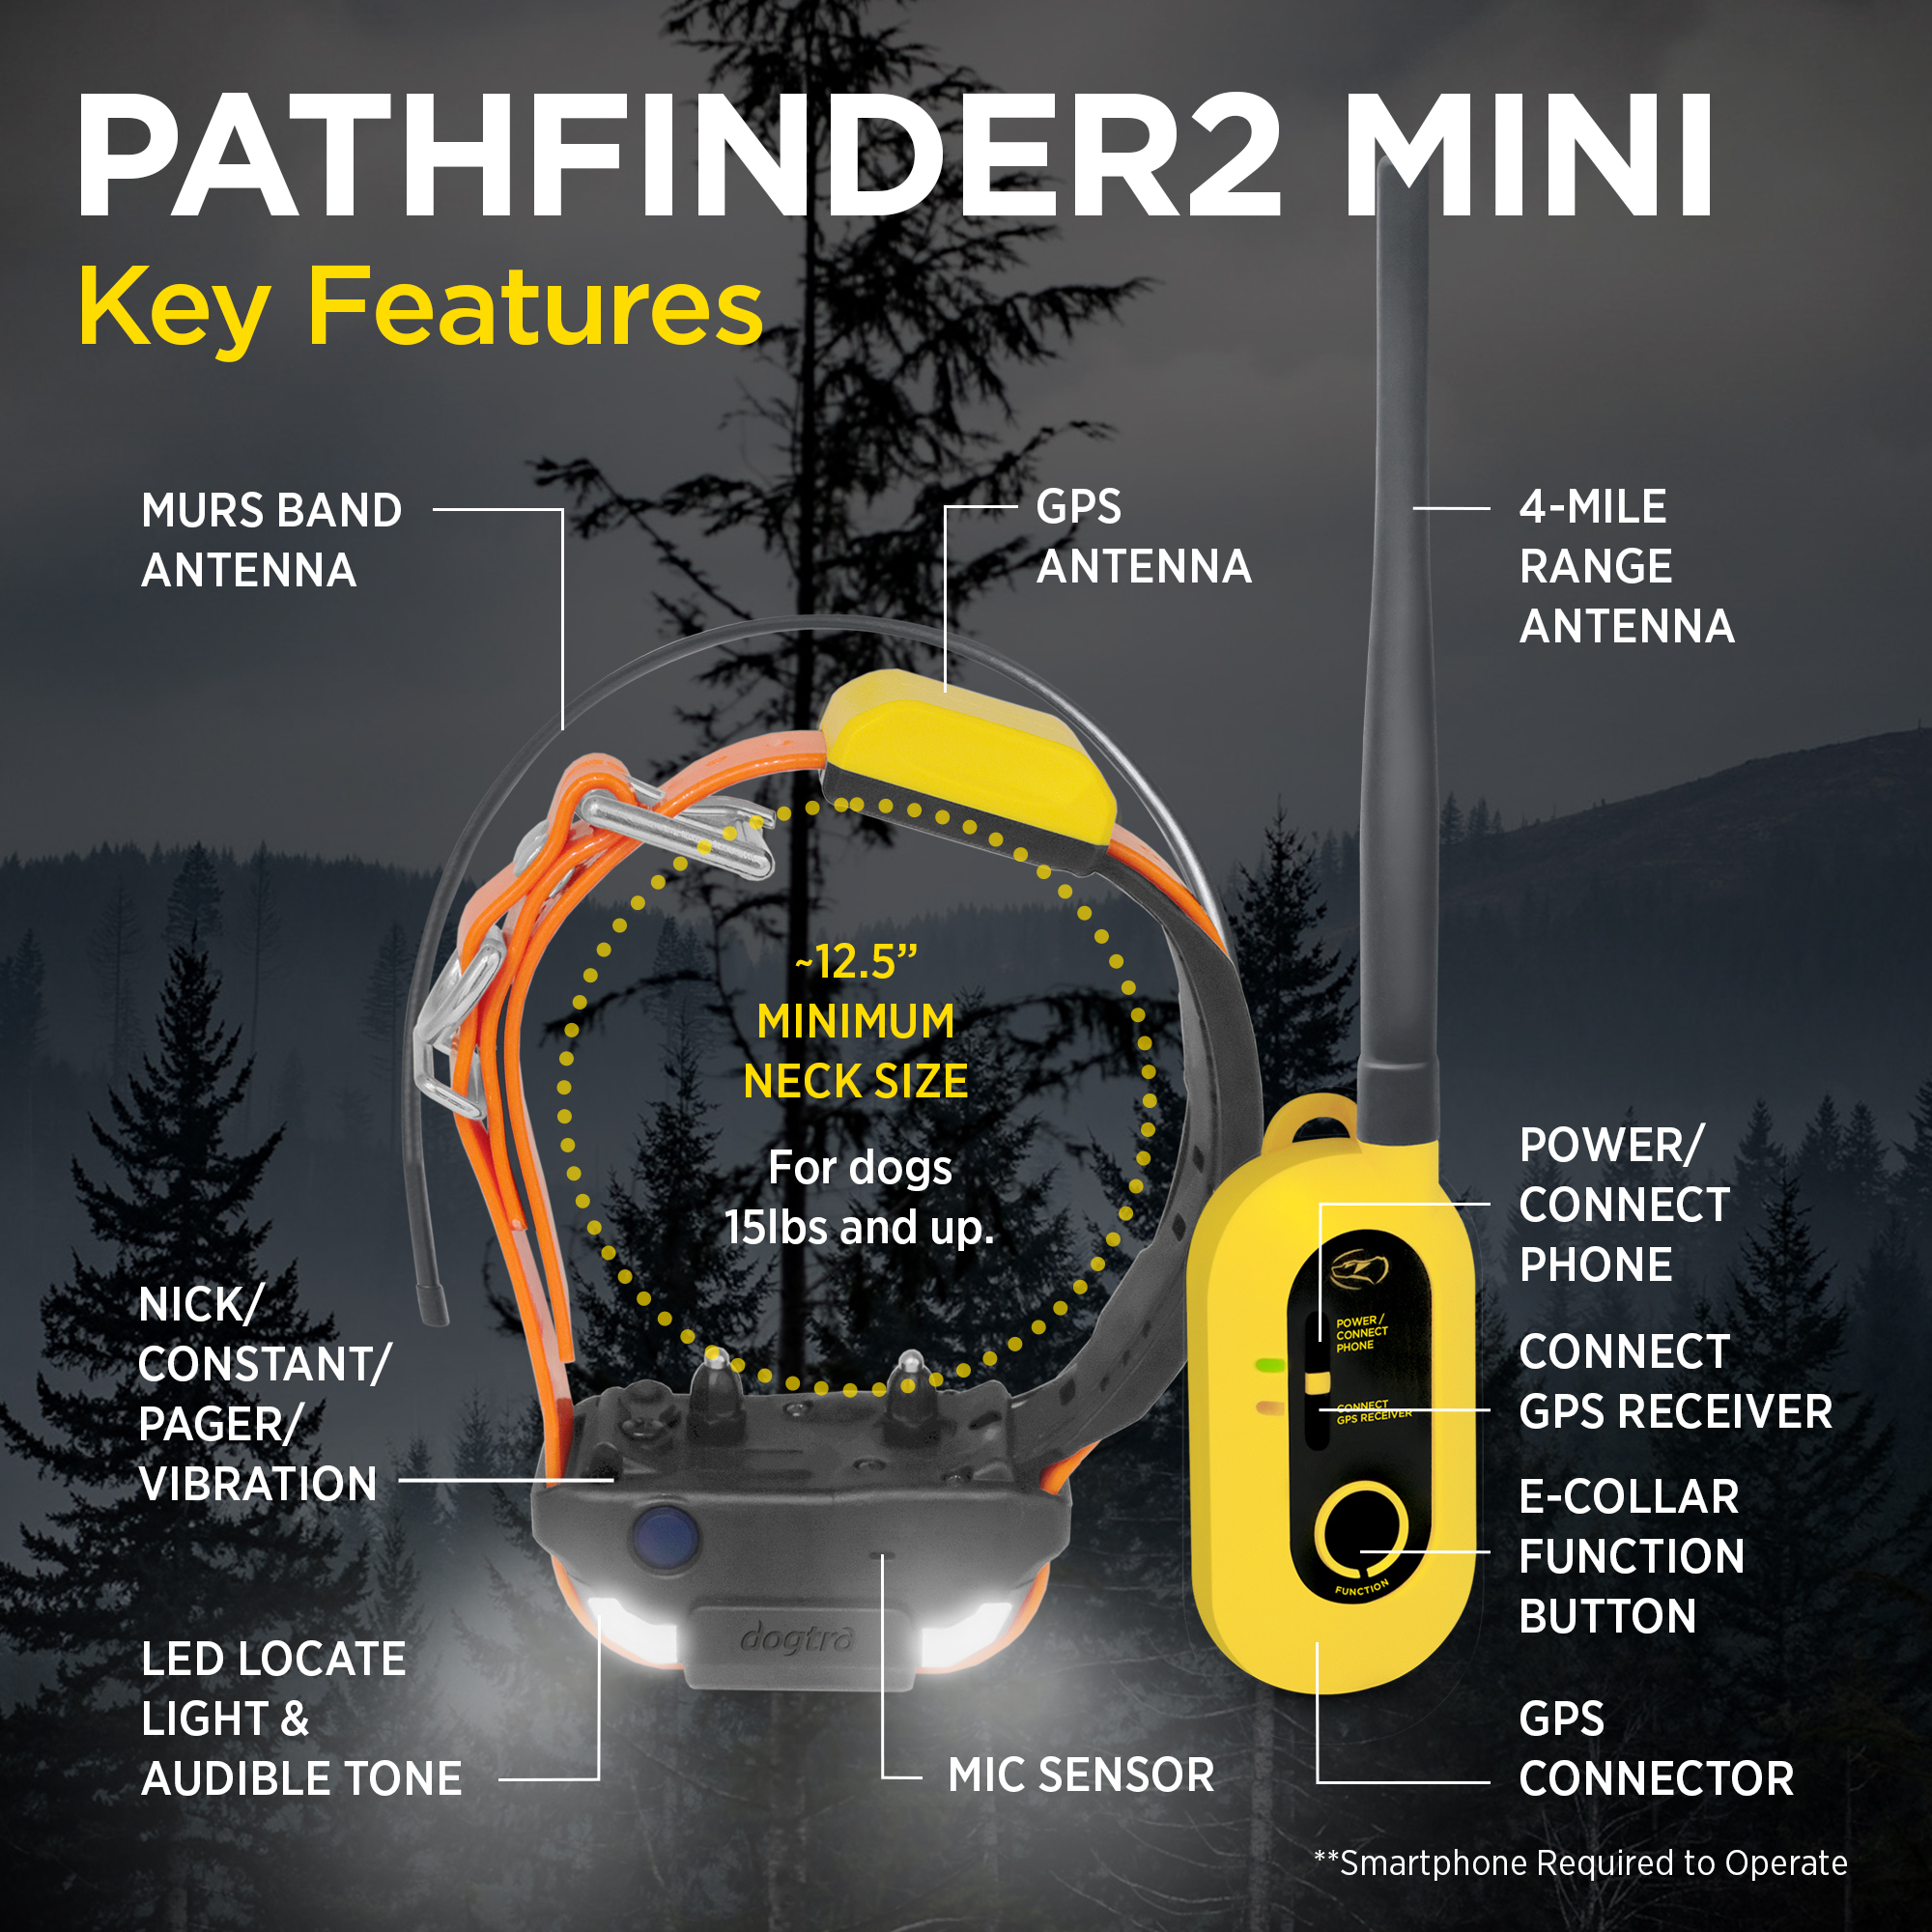 Pathfinder 2 Mini